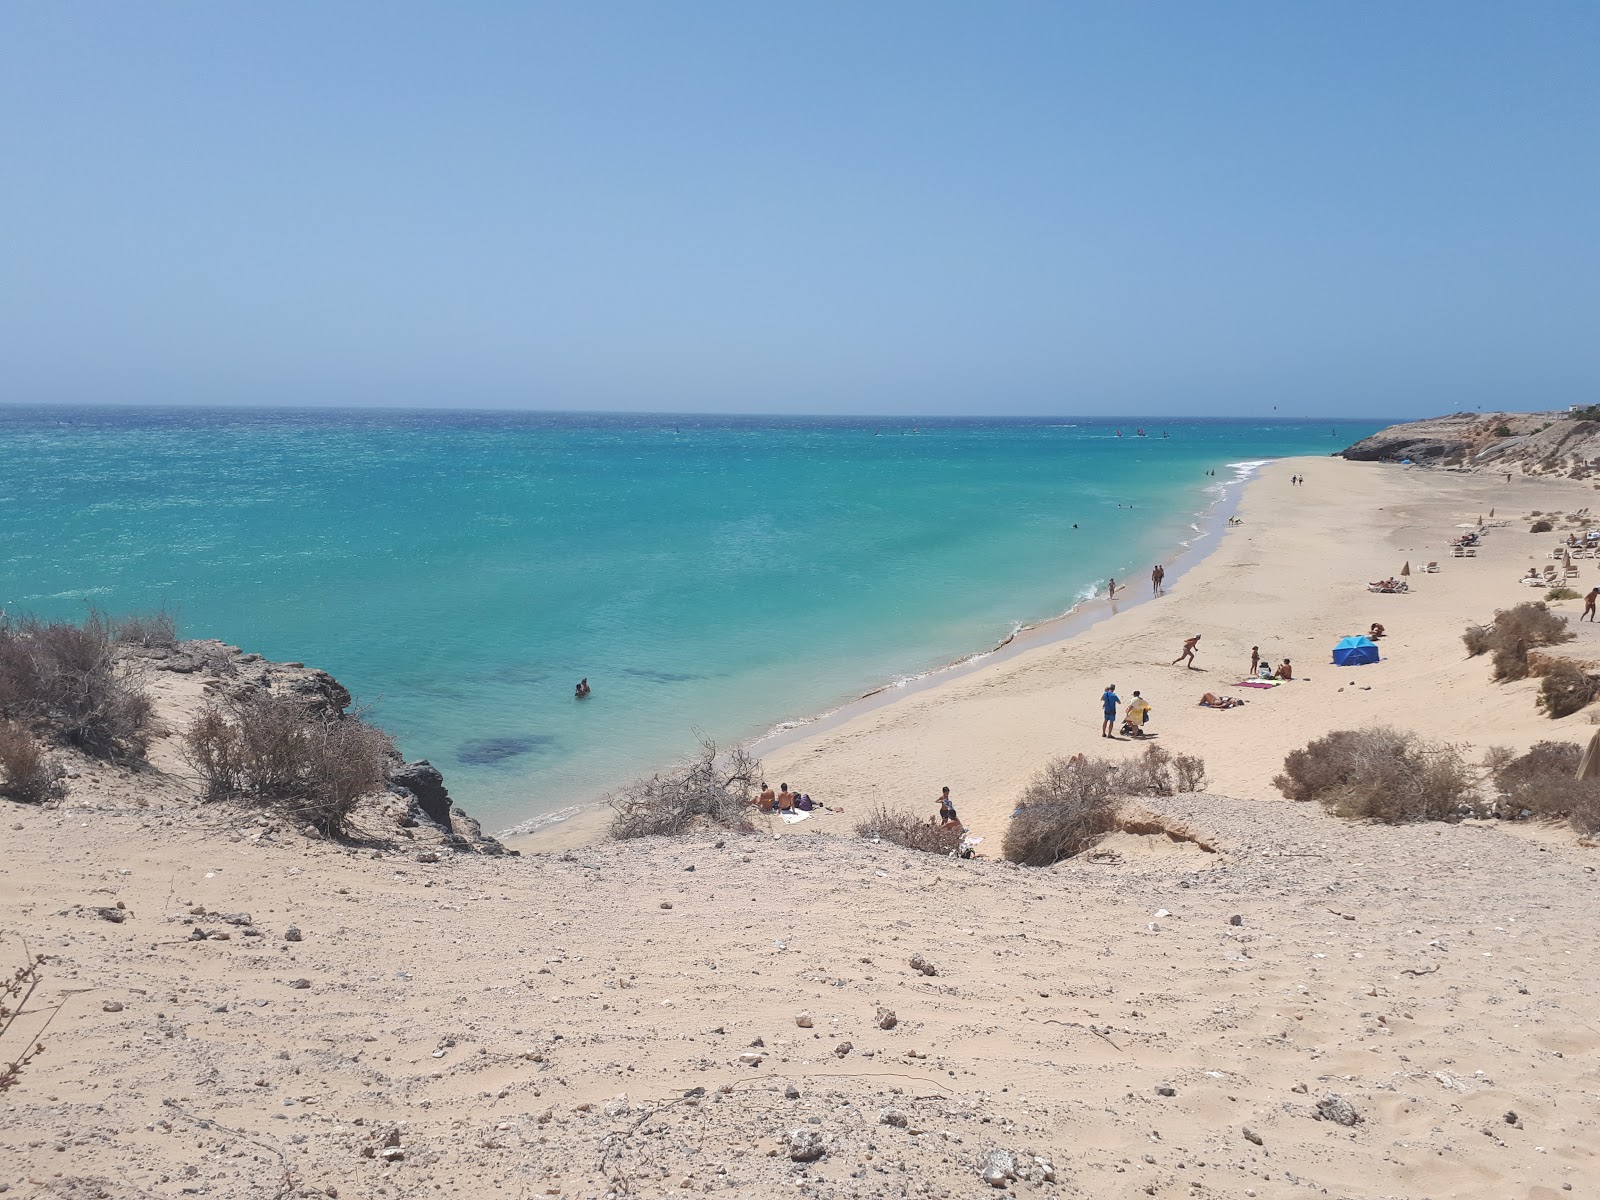 Esmeralda Plajı'in fotoğrafı i̇nce kahverengi kum yüzey ile